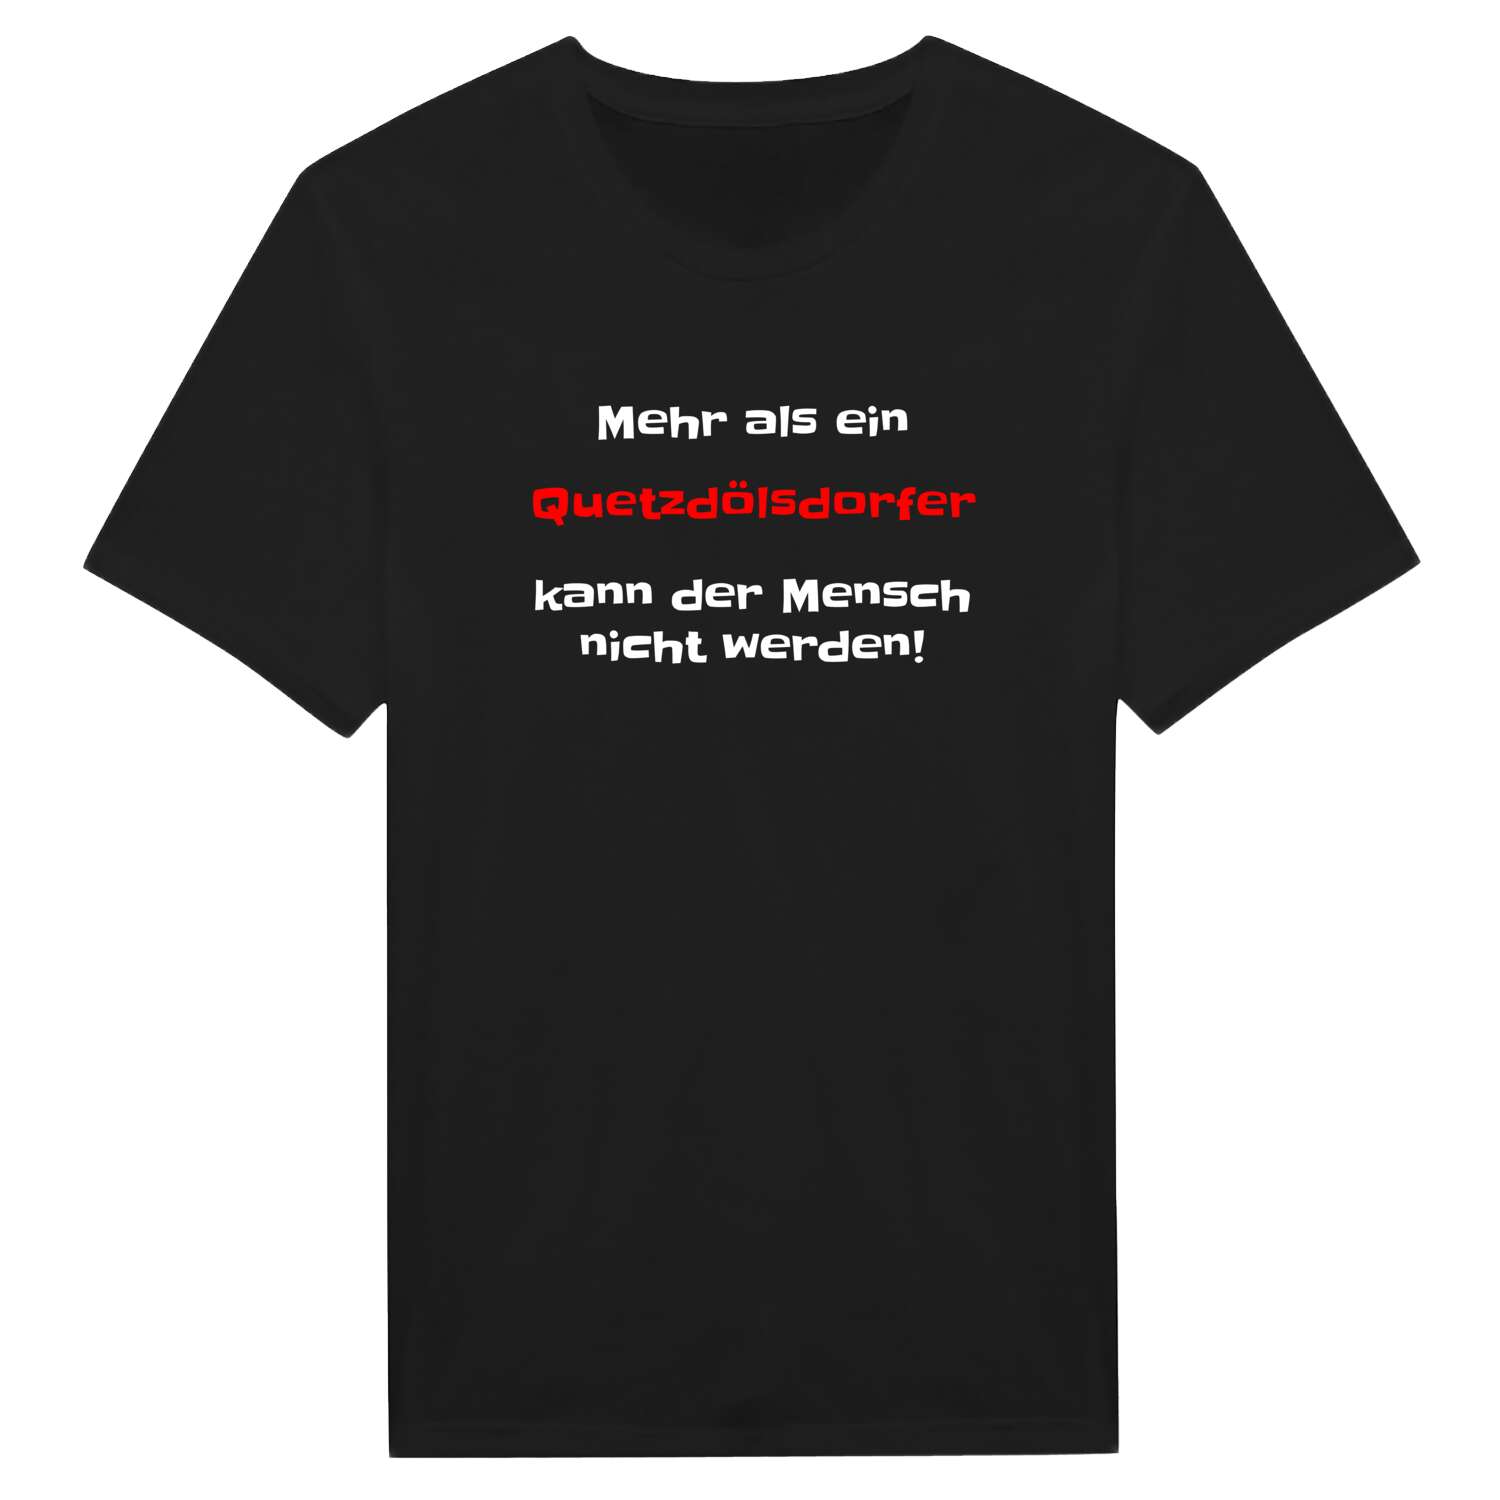 Quetzdölsdorf T-Shirt »Mehr als ein«